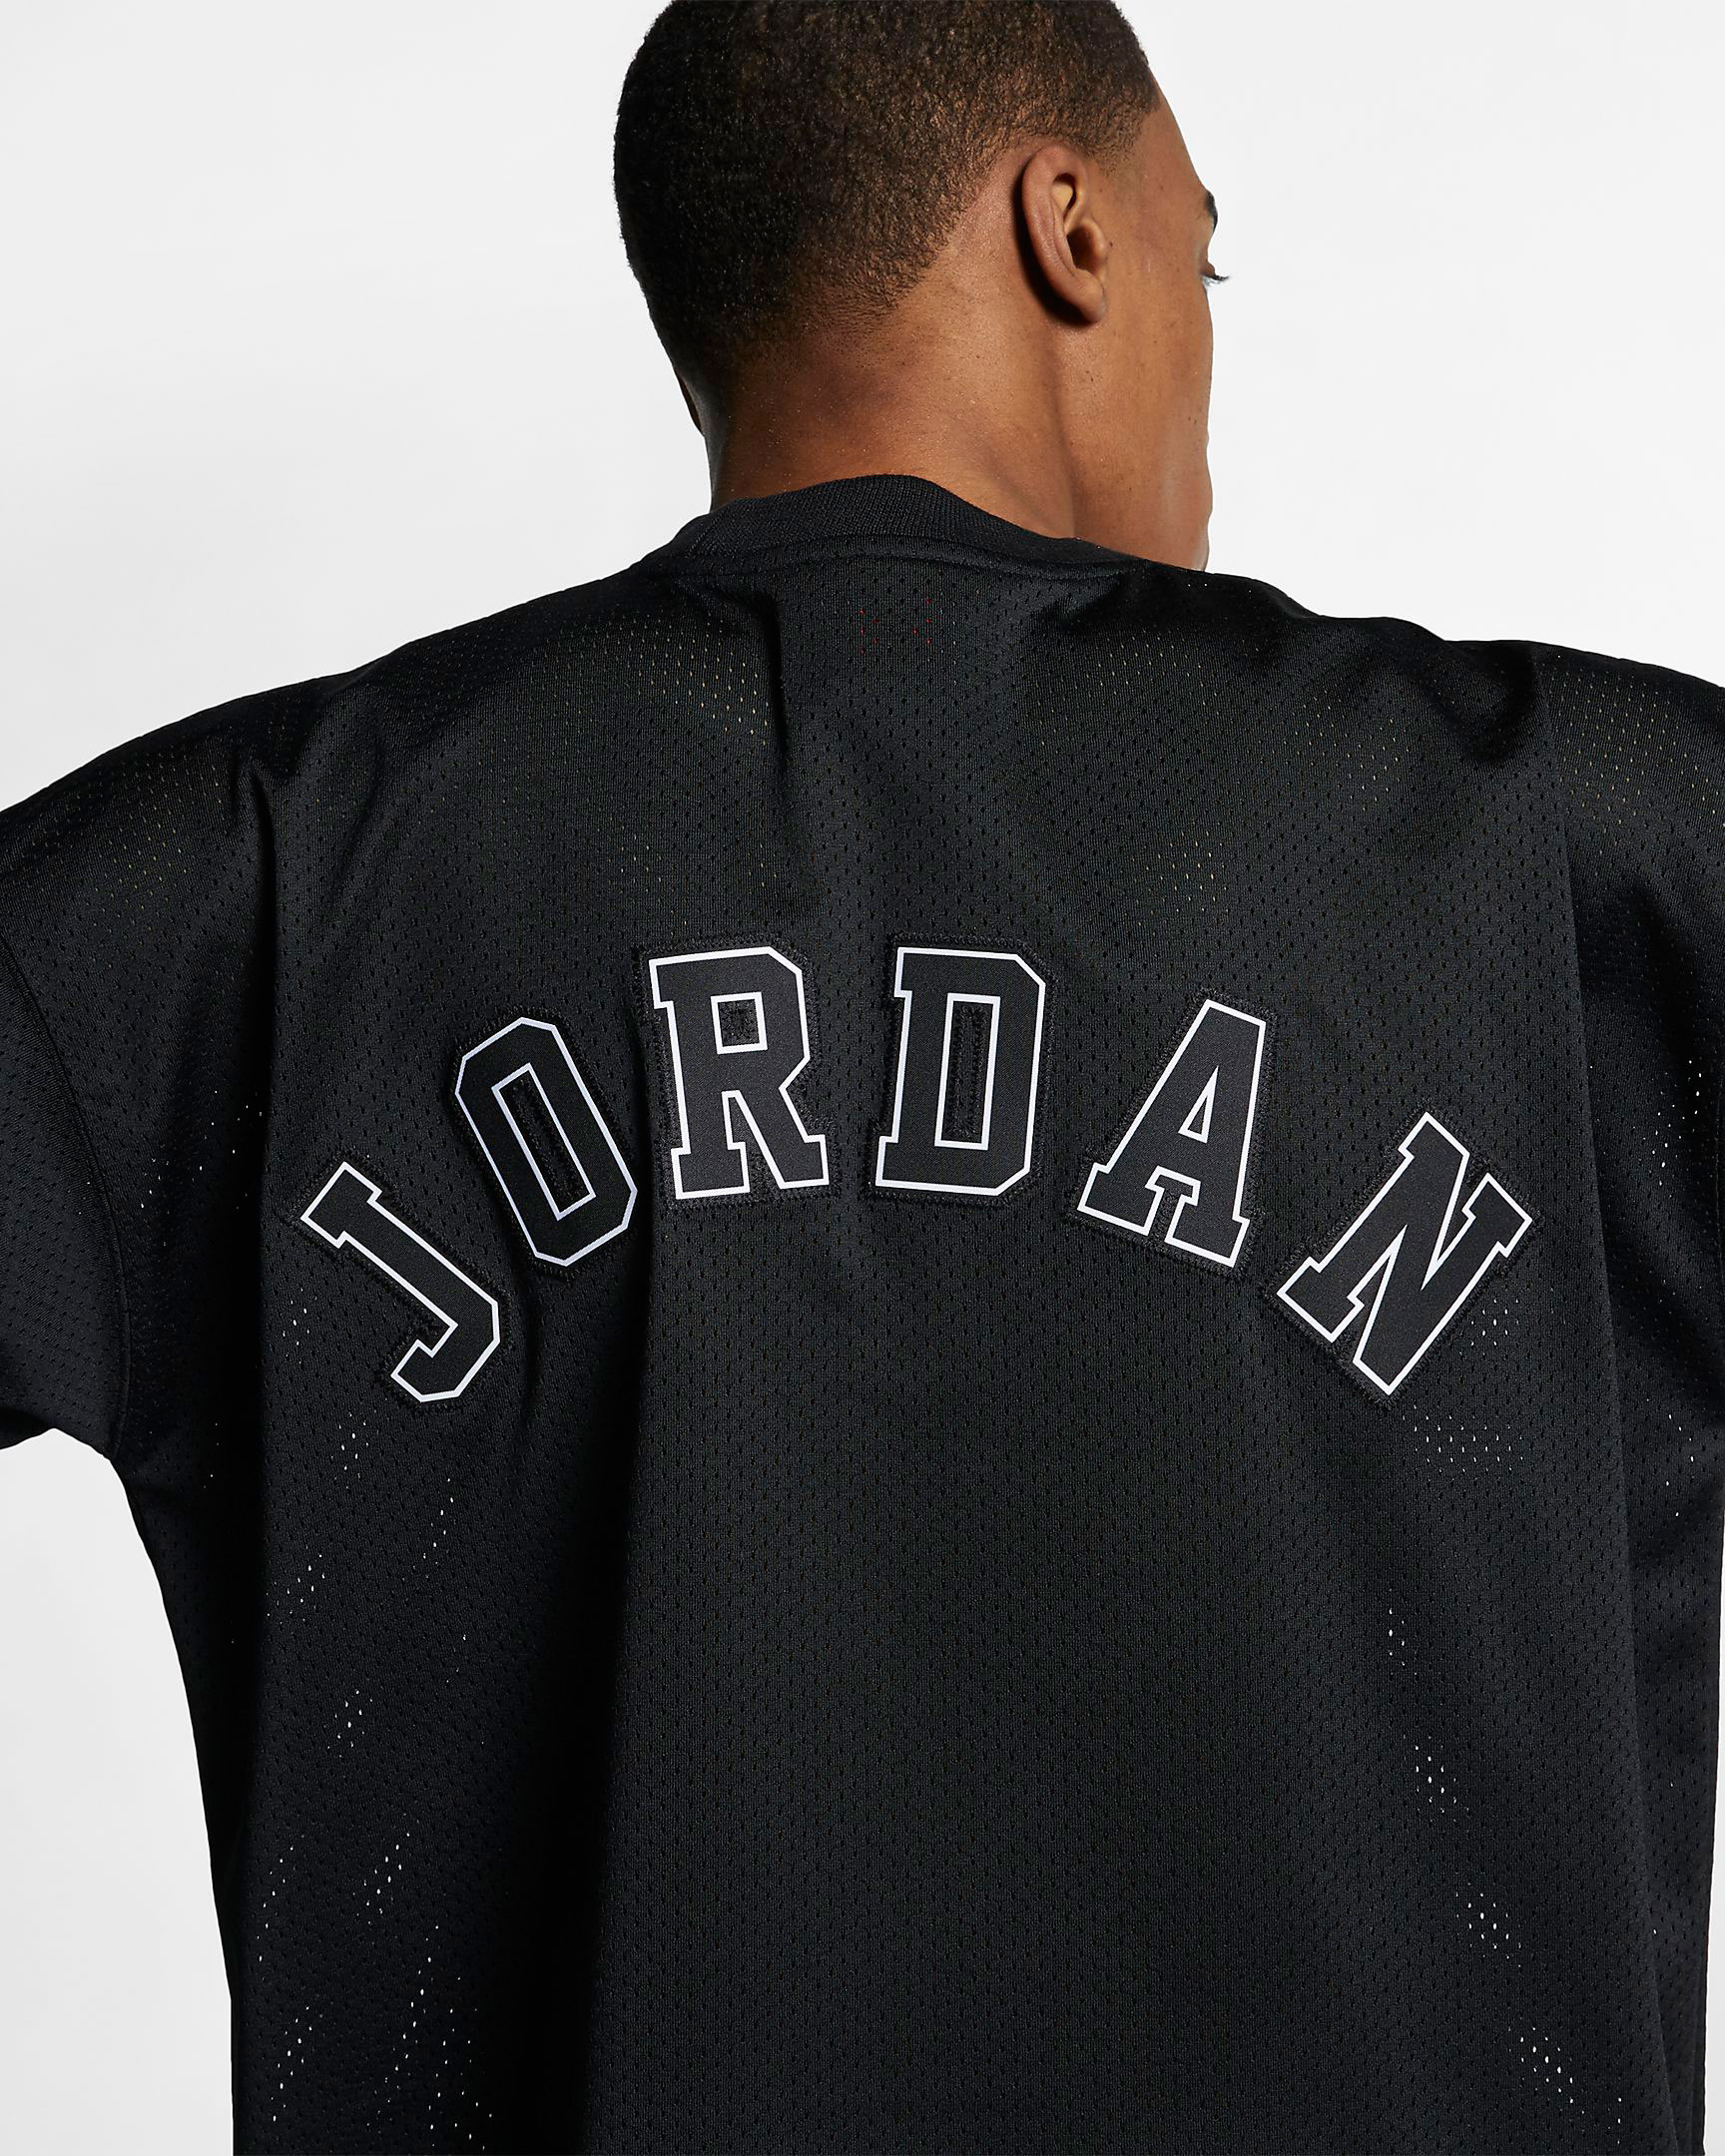 Air Jordan 13 Cap and Gown Jersey Shirt 